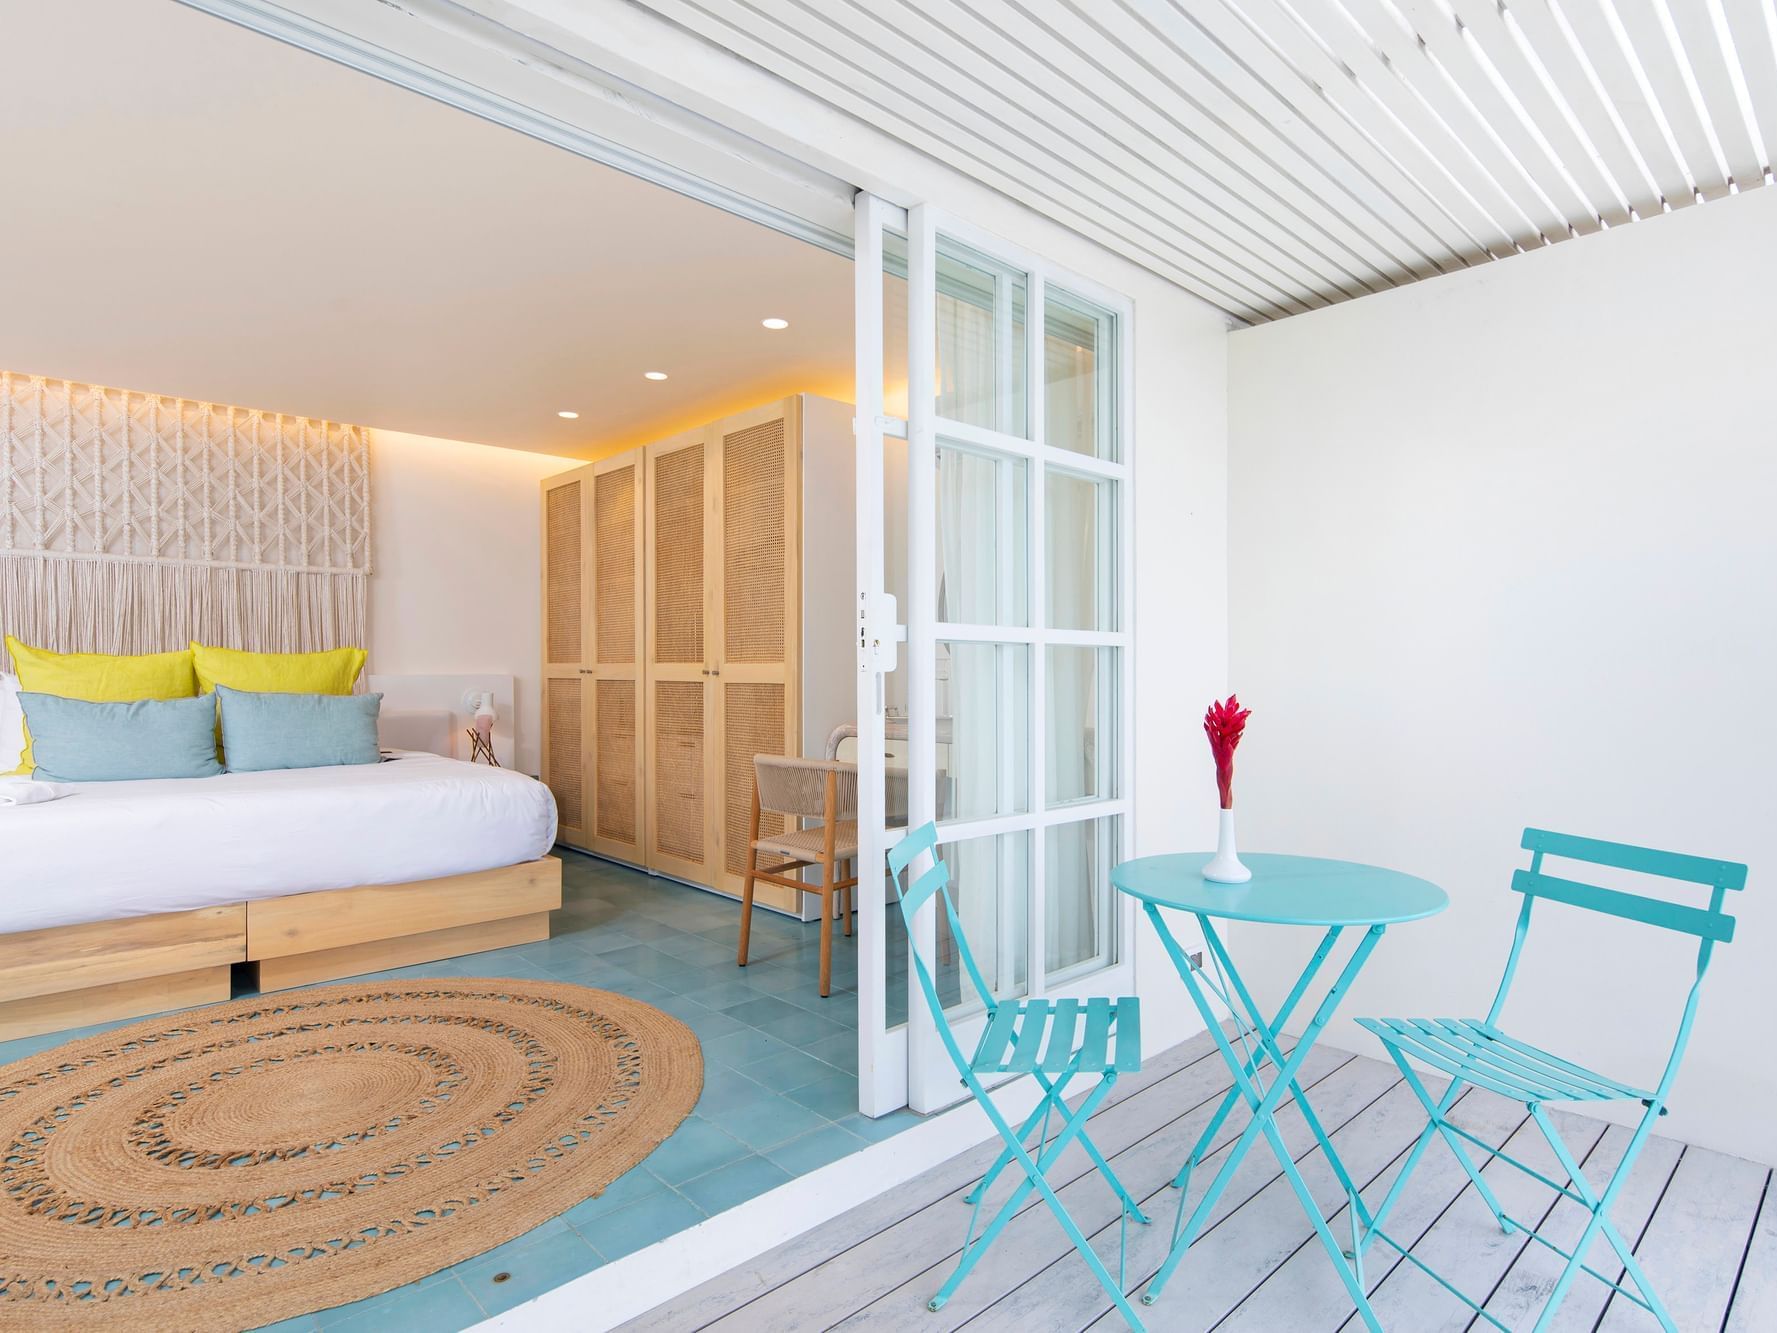 Bedroom & patio in Premium Room at Retreat Costa Rica